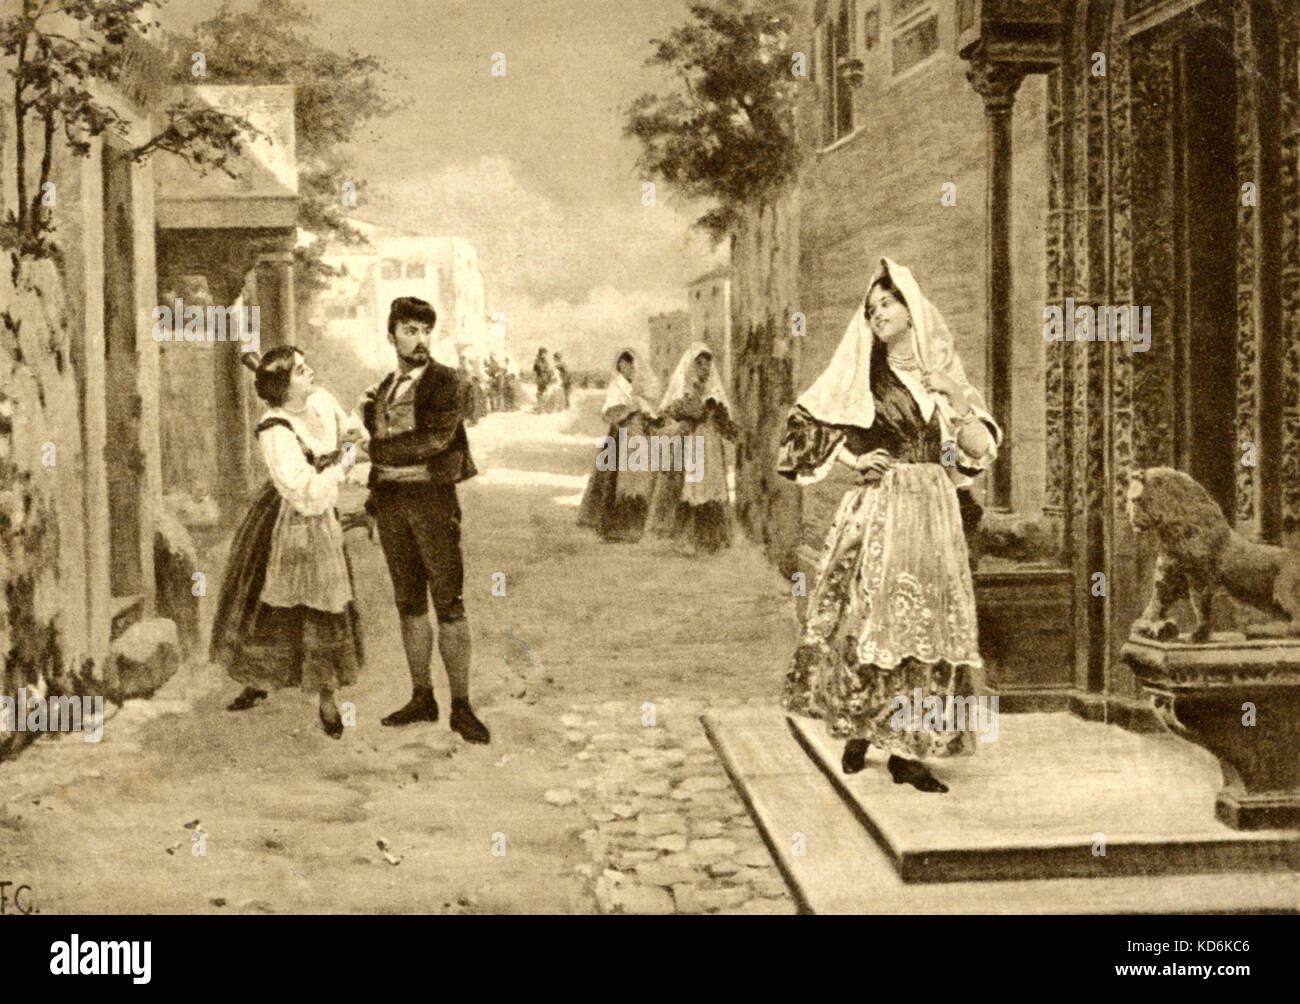 Scena da Mascagni opera "Cavalleria Rusticana" Santuzza è sconvolto quando scopre il suo amante Turiddu ha abbandonato il suo in favore della Lola. Compositore italiano (1863-1945). Foto Stock